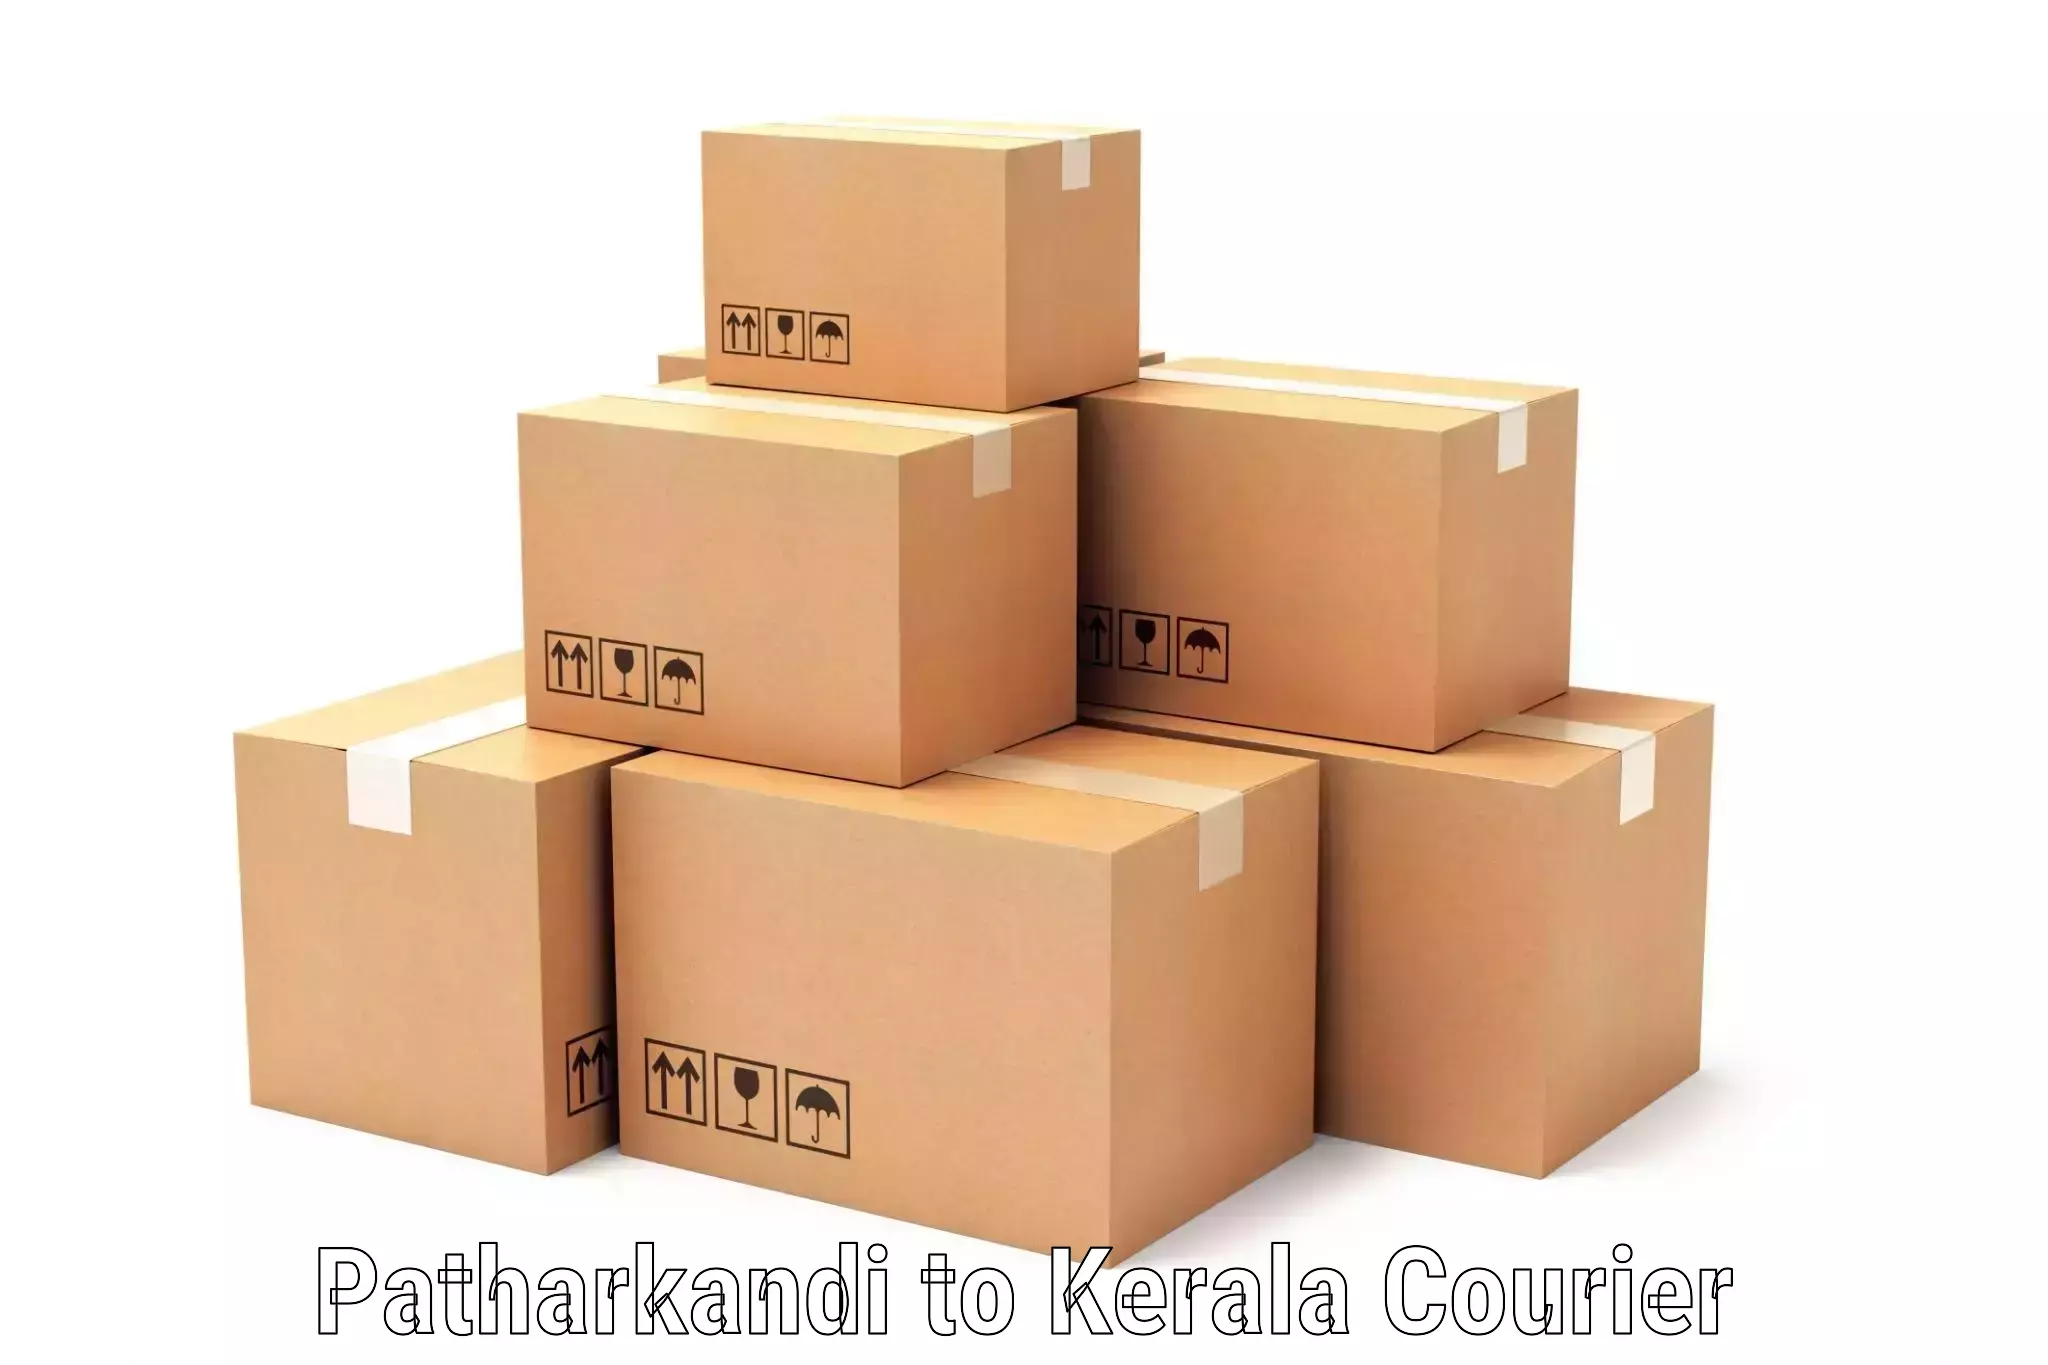 Logistics management Patharkandi to Muvattupuzha